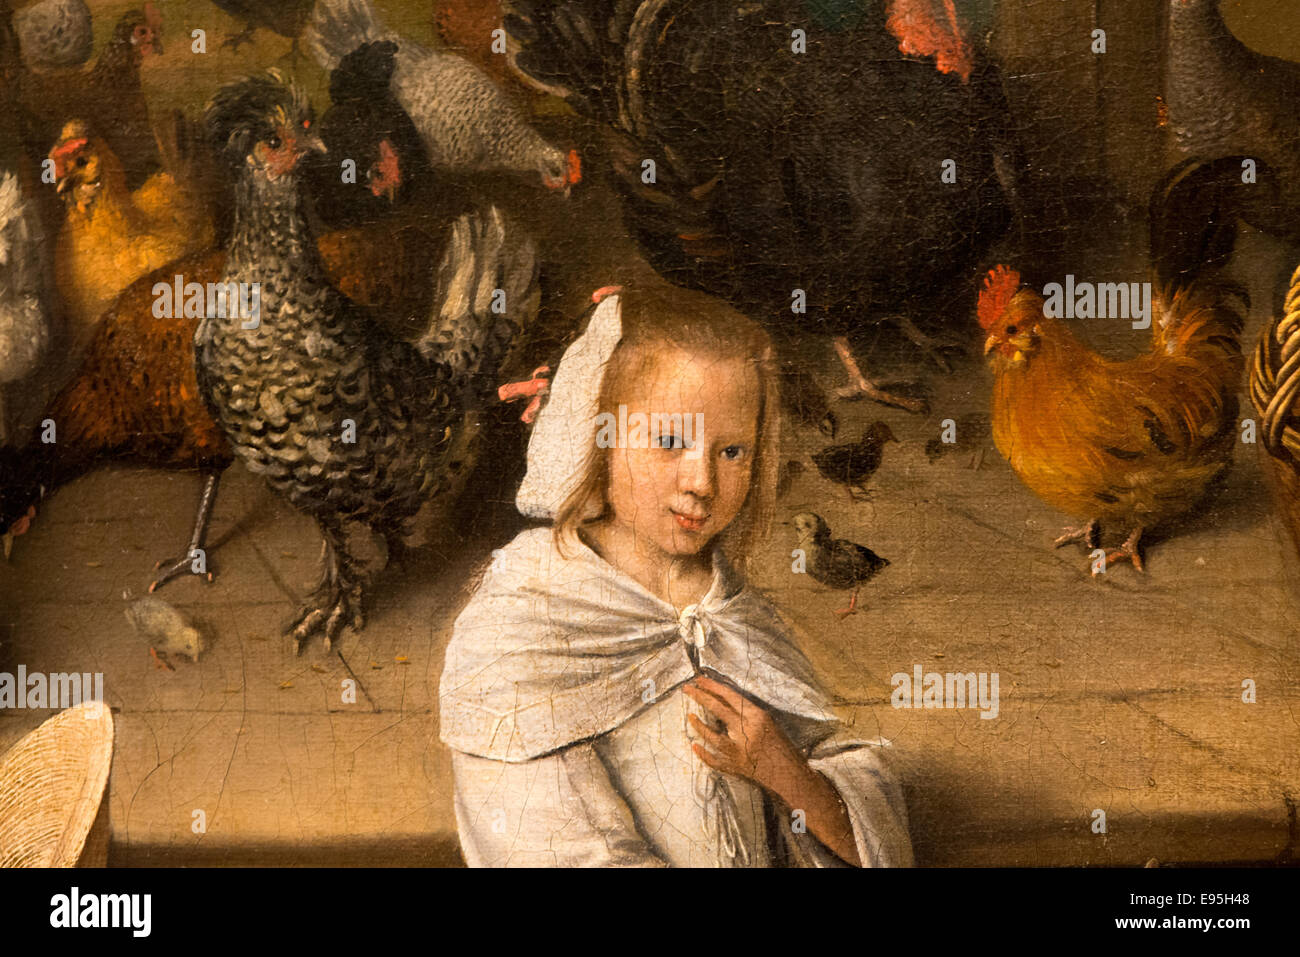 La cour de volailles de peintre hollandais Jan Steen au mauritshuis à La Haye Holland Banque D'Images